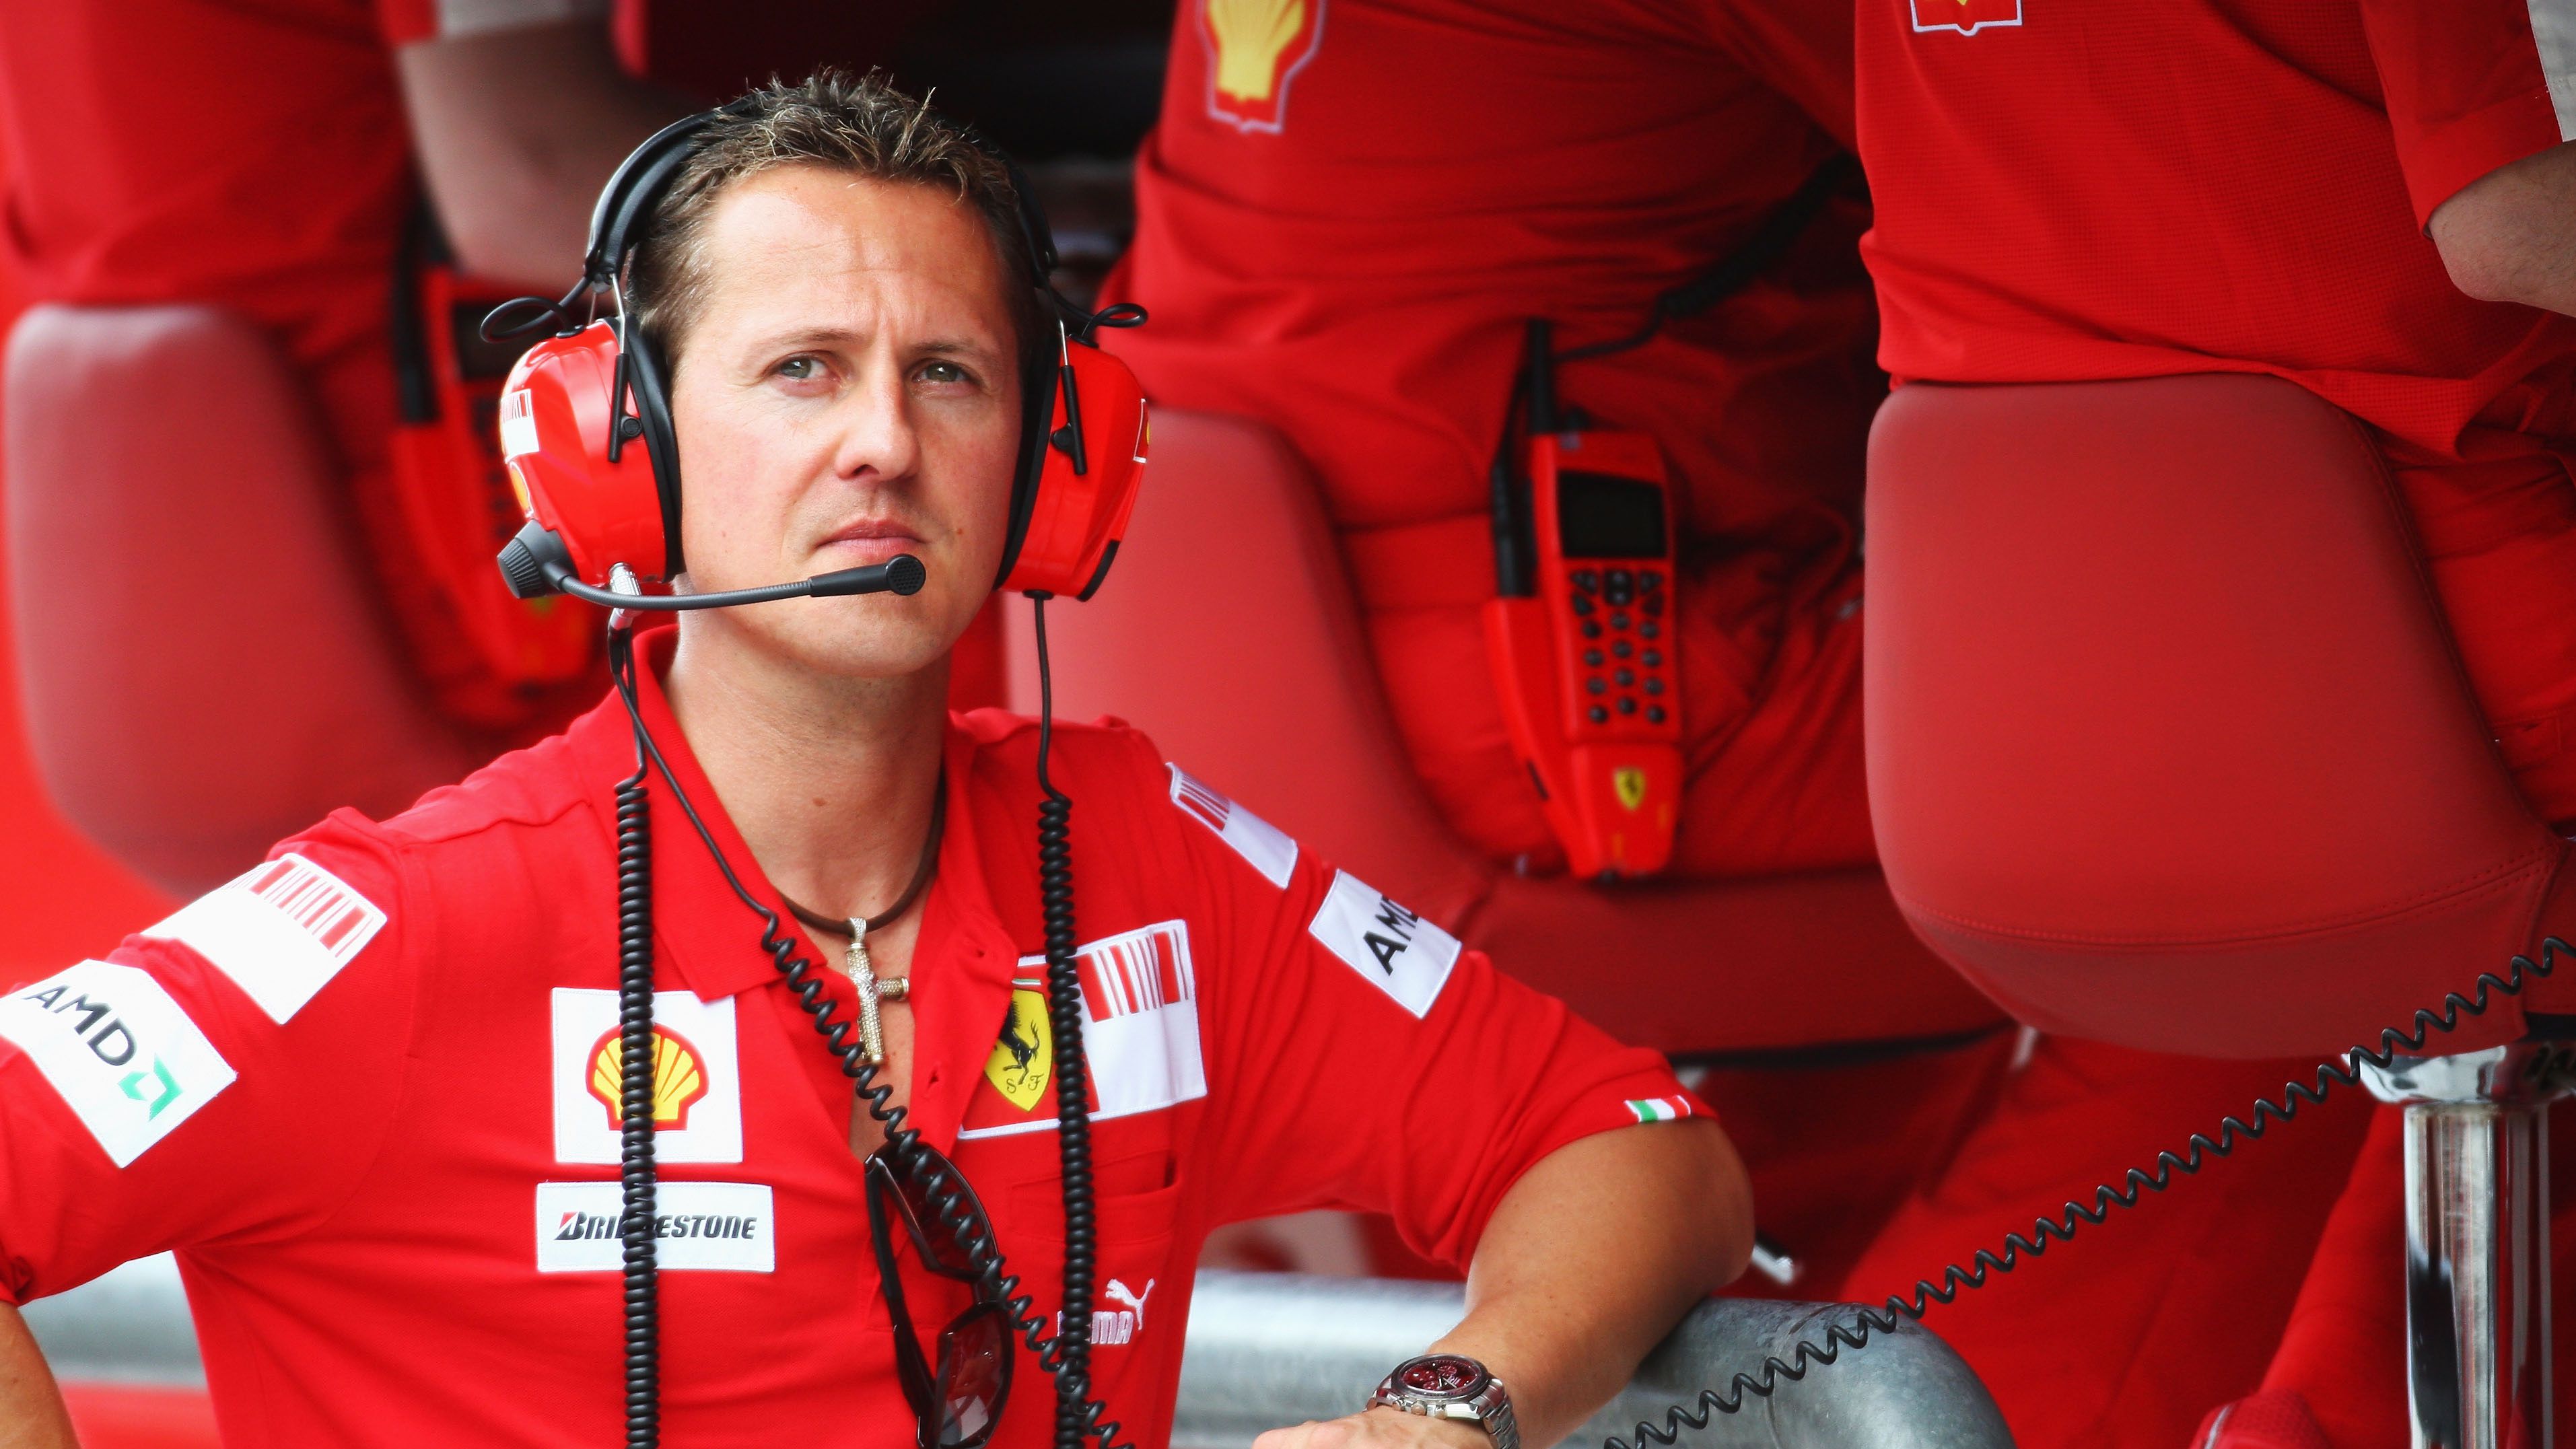 Kiderült, miért titkolják Michael Schumacher állapotát – megszólalt az ügyvédje